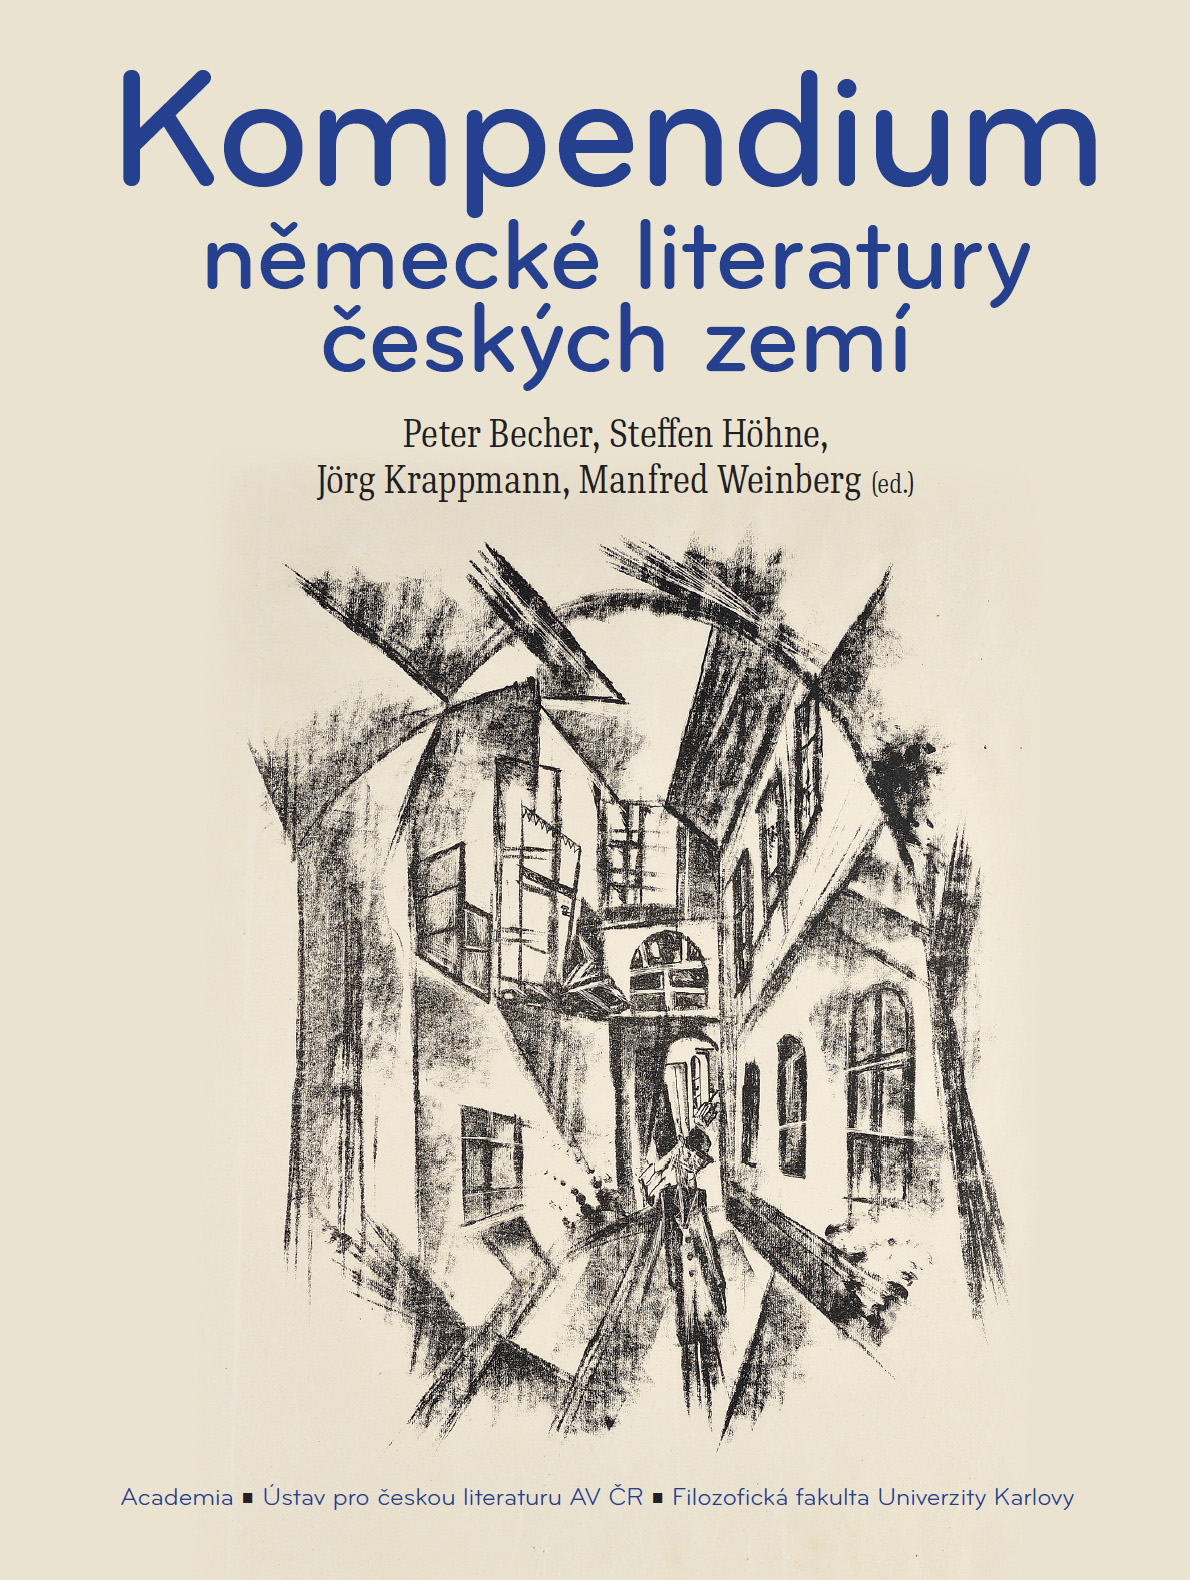 Kompendium německé literatury českých zemí